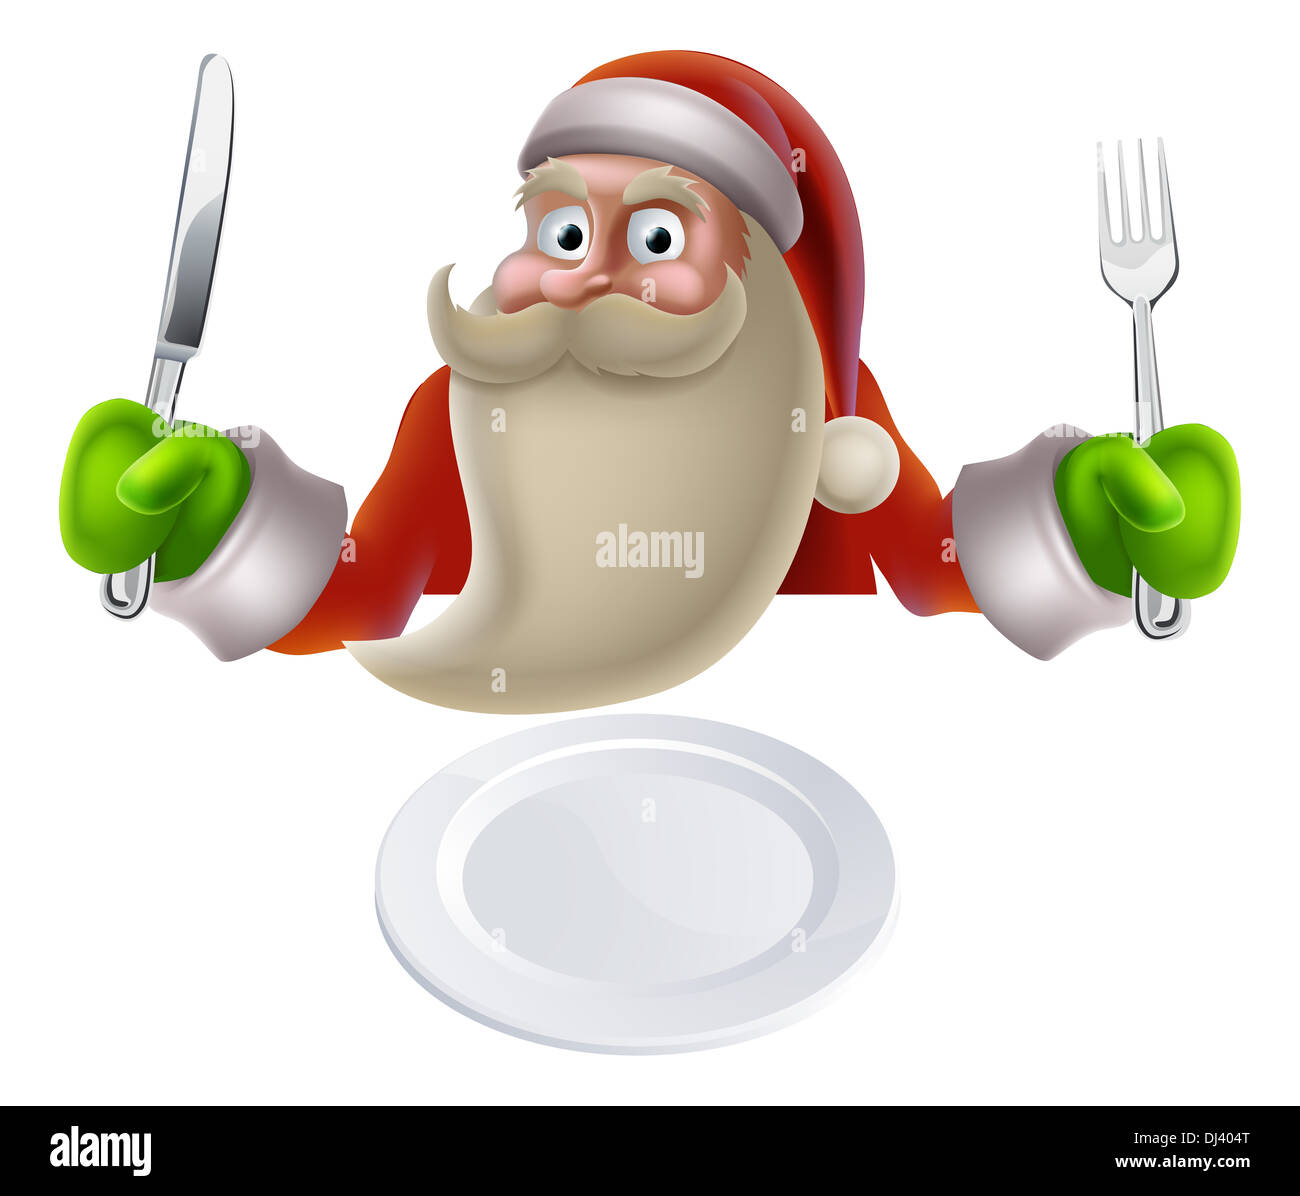 Santa célébrant Noël, cartoon Santa assis avec un couteau et une fourchette pour le dîner prêt à être mis dans son assiette Banque D'Images